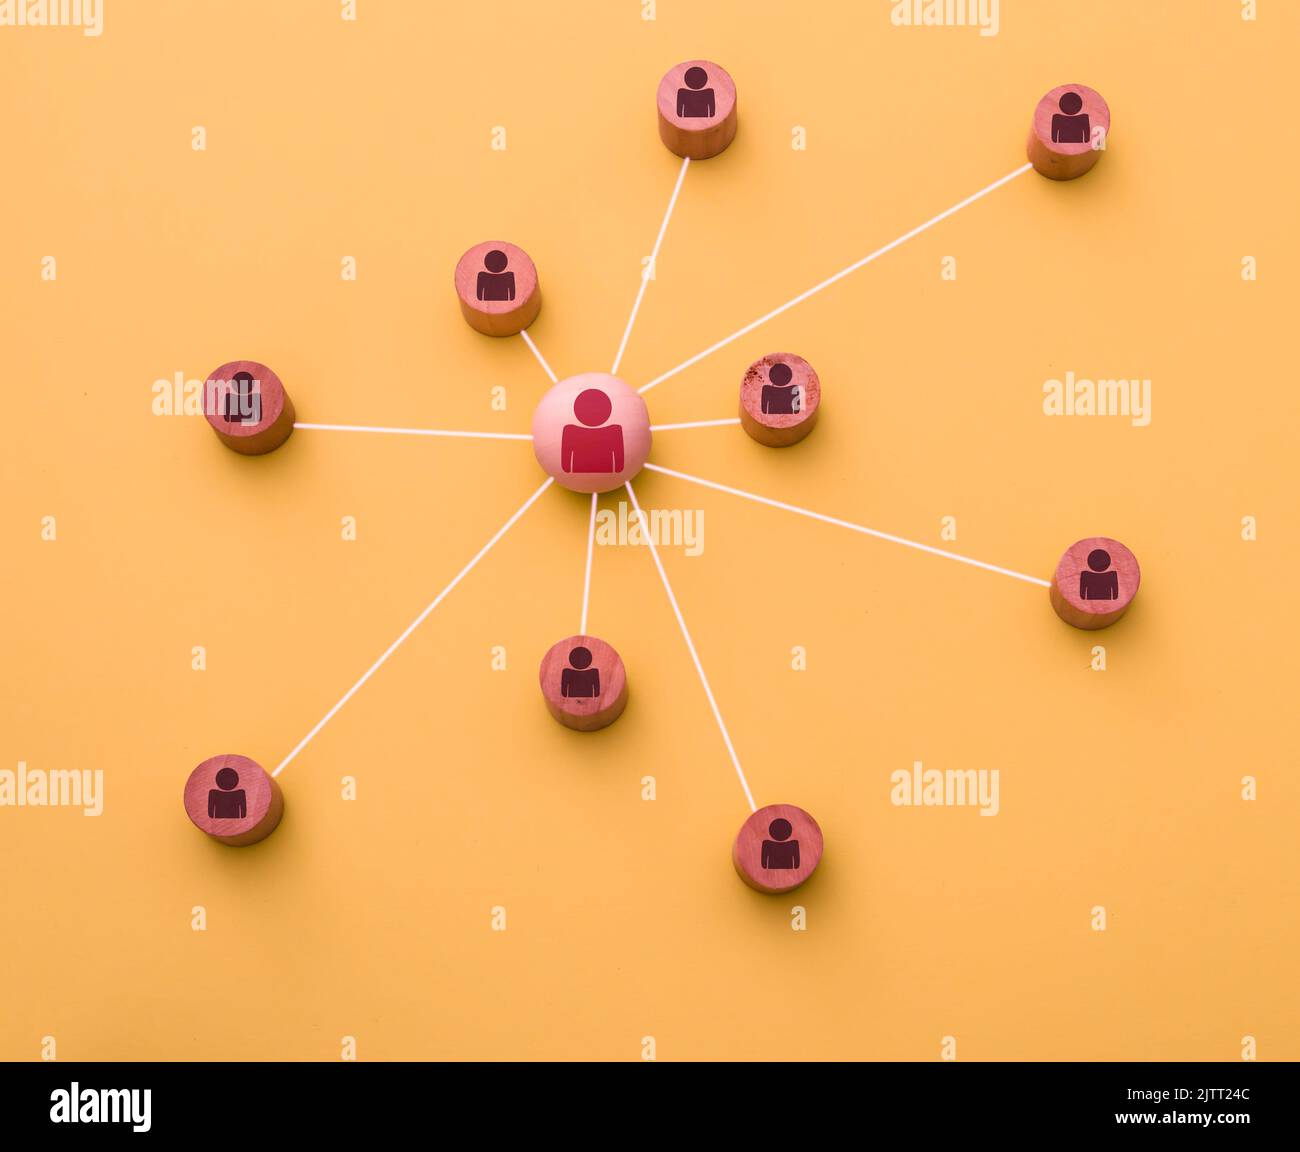 Darstellung mit 3D Icons eines Netzwerks von Social-Media-Kontakten auf orangefarbenem Hintergrund Stockfoto